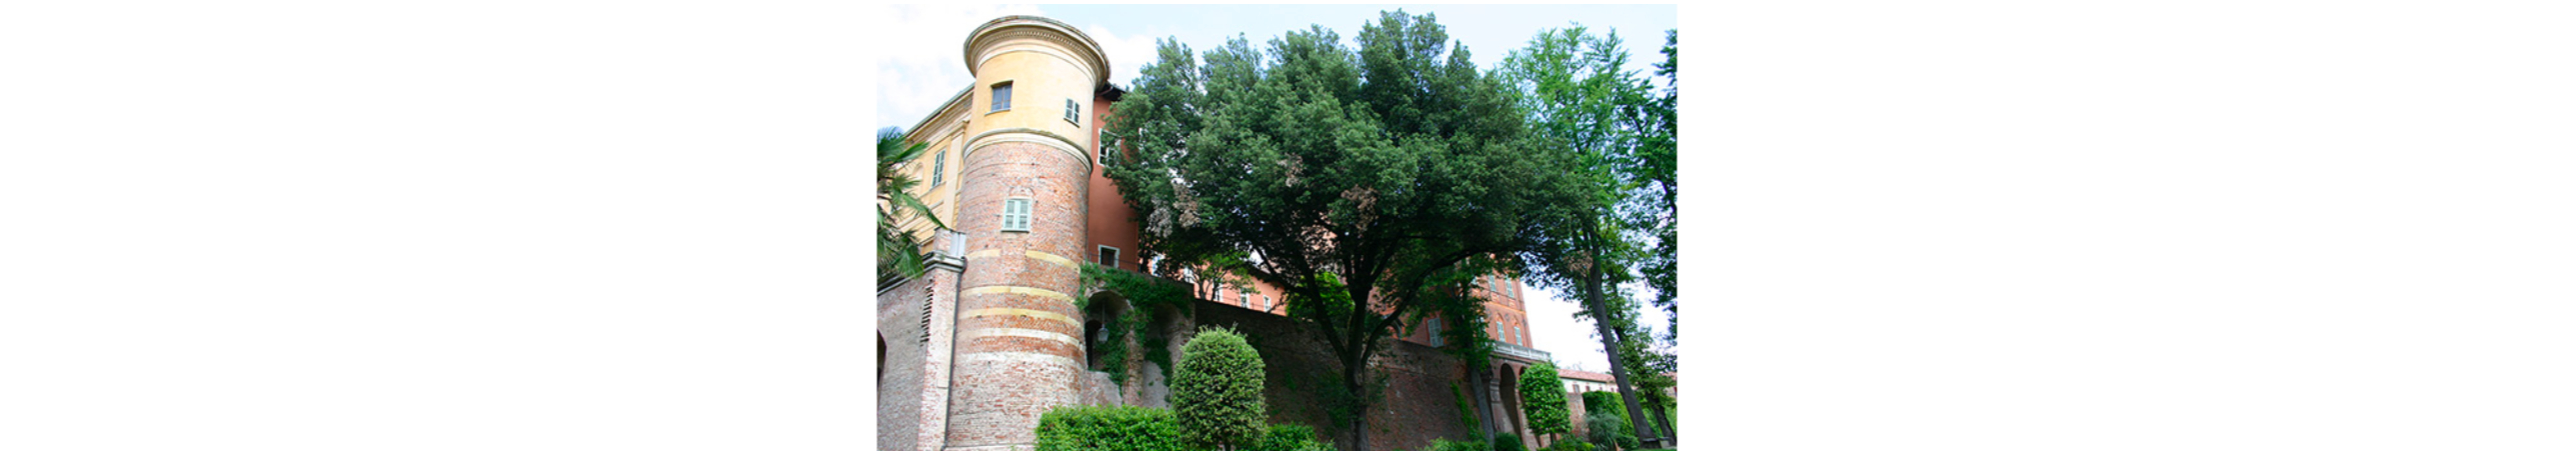 CASTELLO DI UVIGLIE - Rosignano Monferrato (AT) banner image